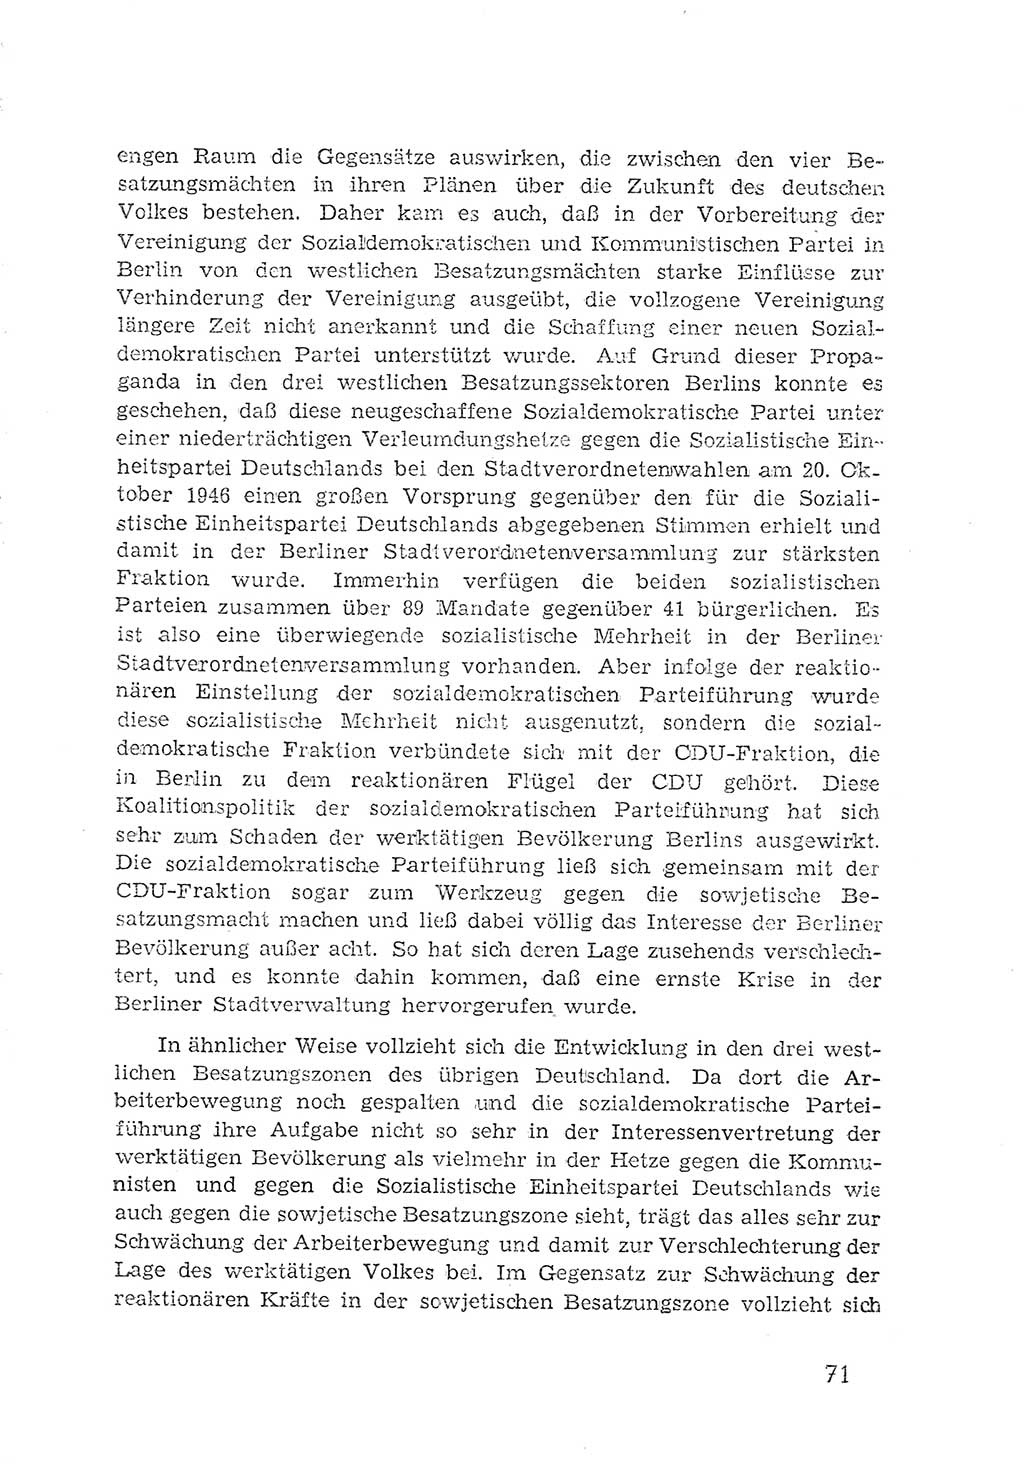 Protokoll der Verhandlungen des 2. Parteitages der Sozialistischen Einheitspartei Deutschlands (SED) [Sowjetische Besatzungszone (SBZ) Deutschlands] 1947, Seite 71 (Prot. Verh. 2. PT SED SBZ Dtl. 1947, S. 71)